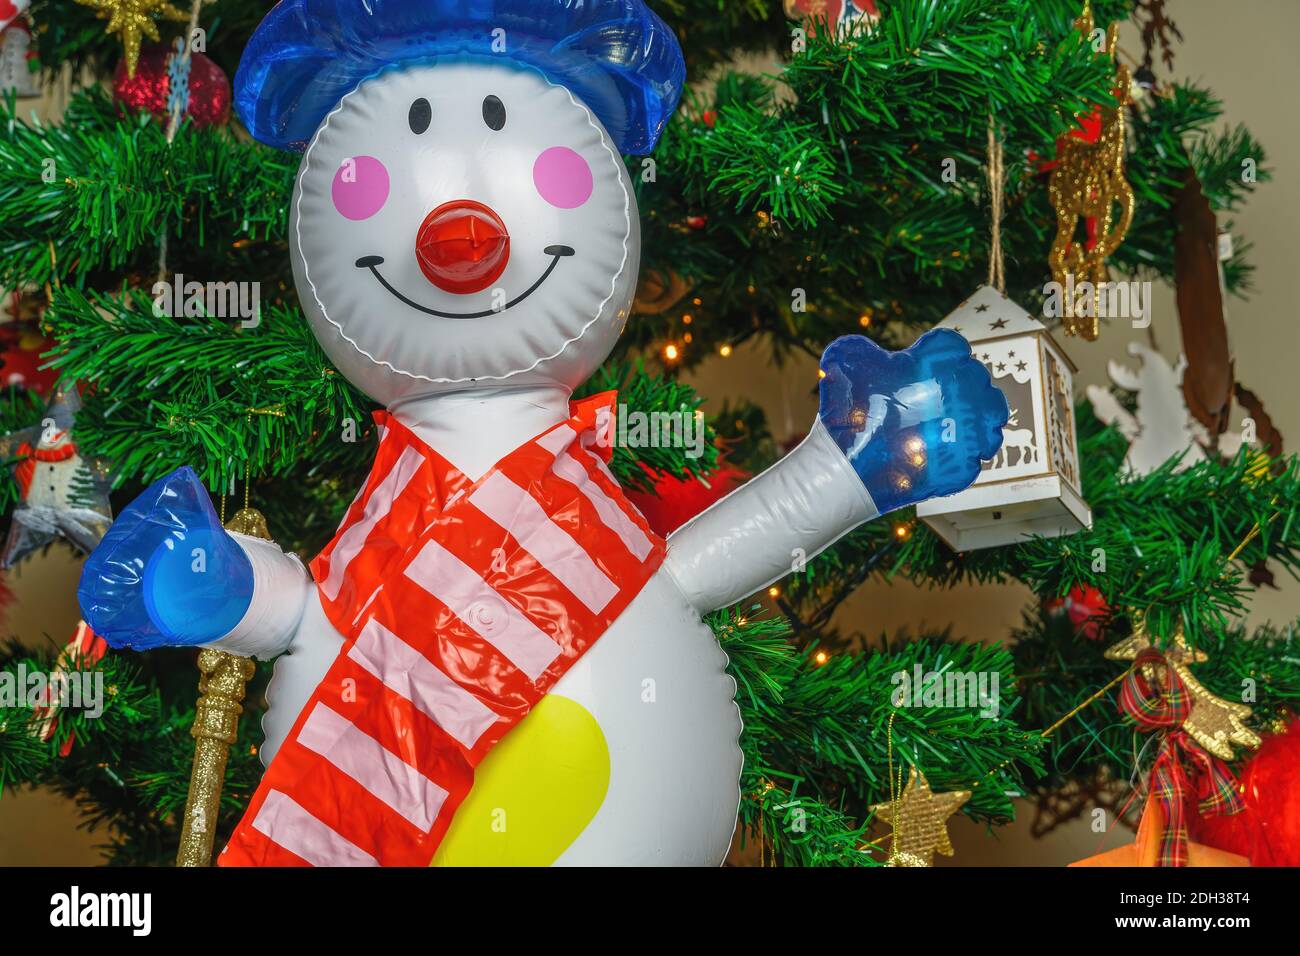 Große aufblasbare Spielzeug Schneemann als Dekoration auf einem Weihnachtsbaum. Luft geblasen saisonalen Figur vor beleuchteten Kunstkiefern Zweige mit Lichtern. Stockfoto